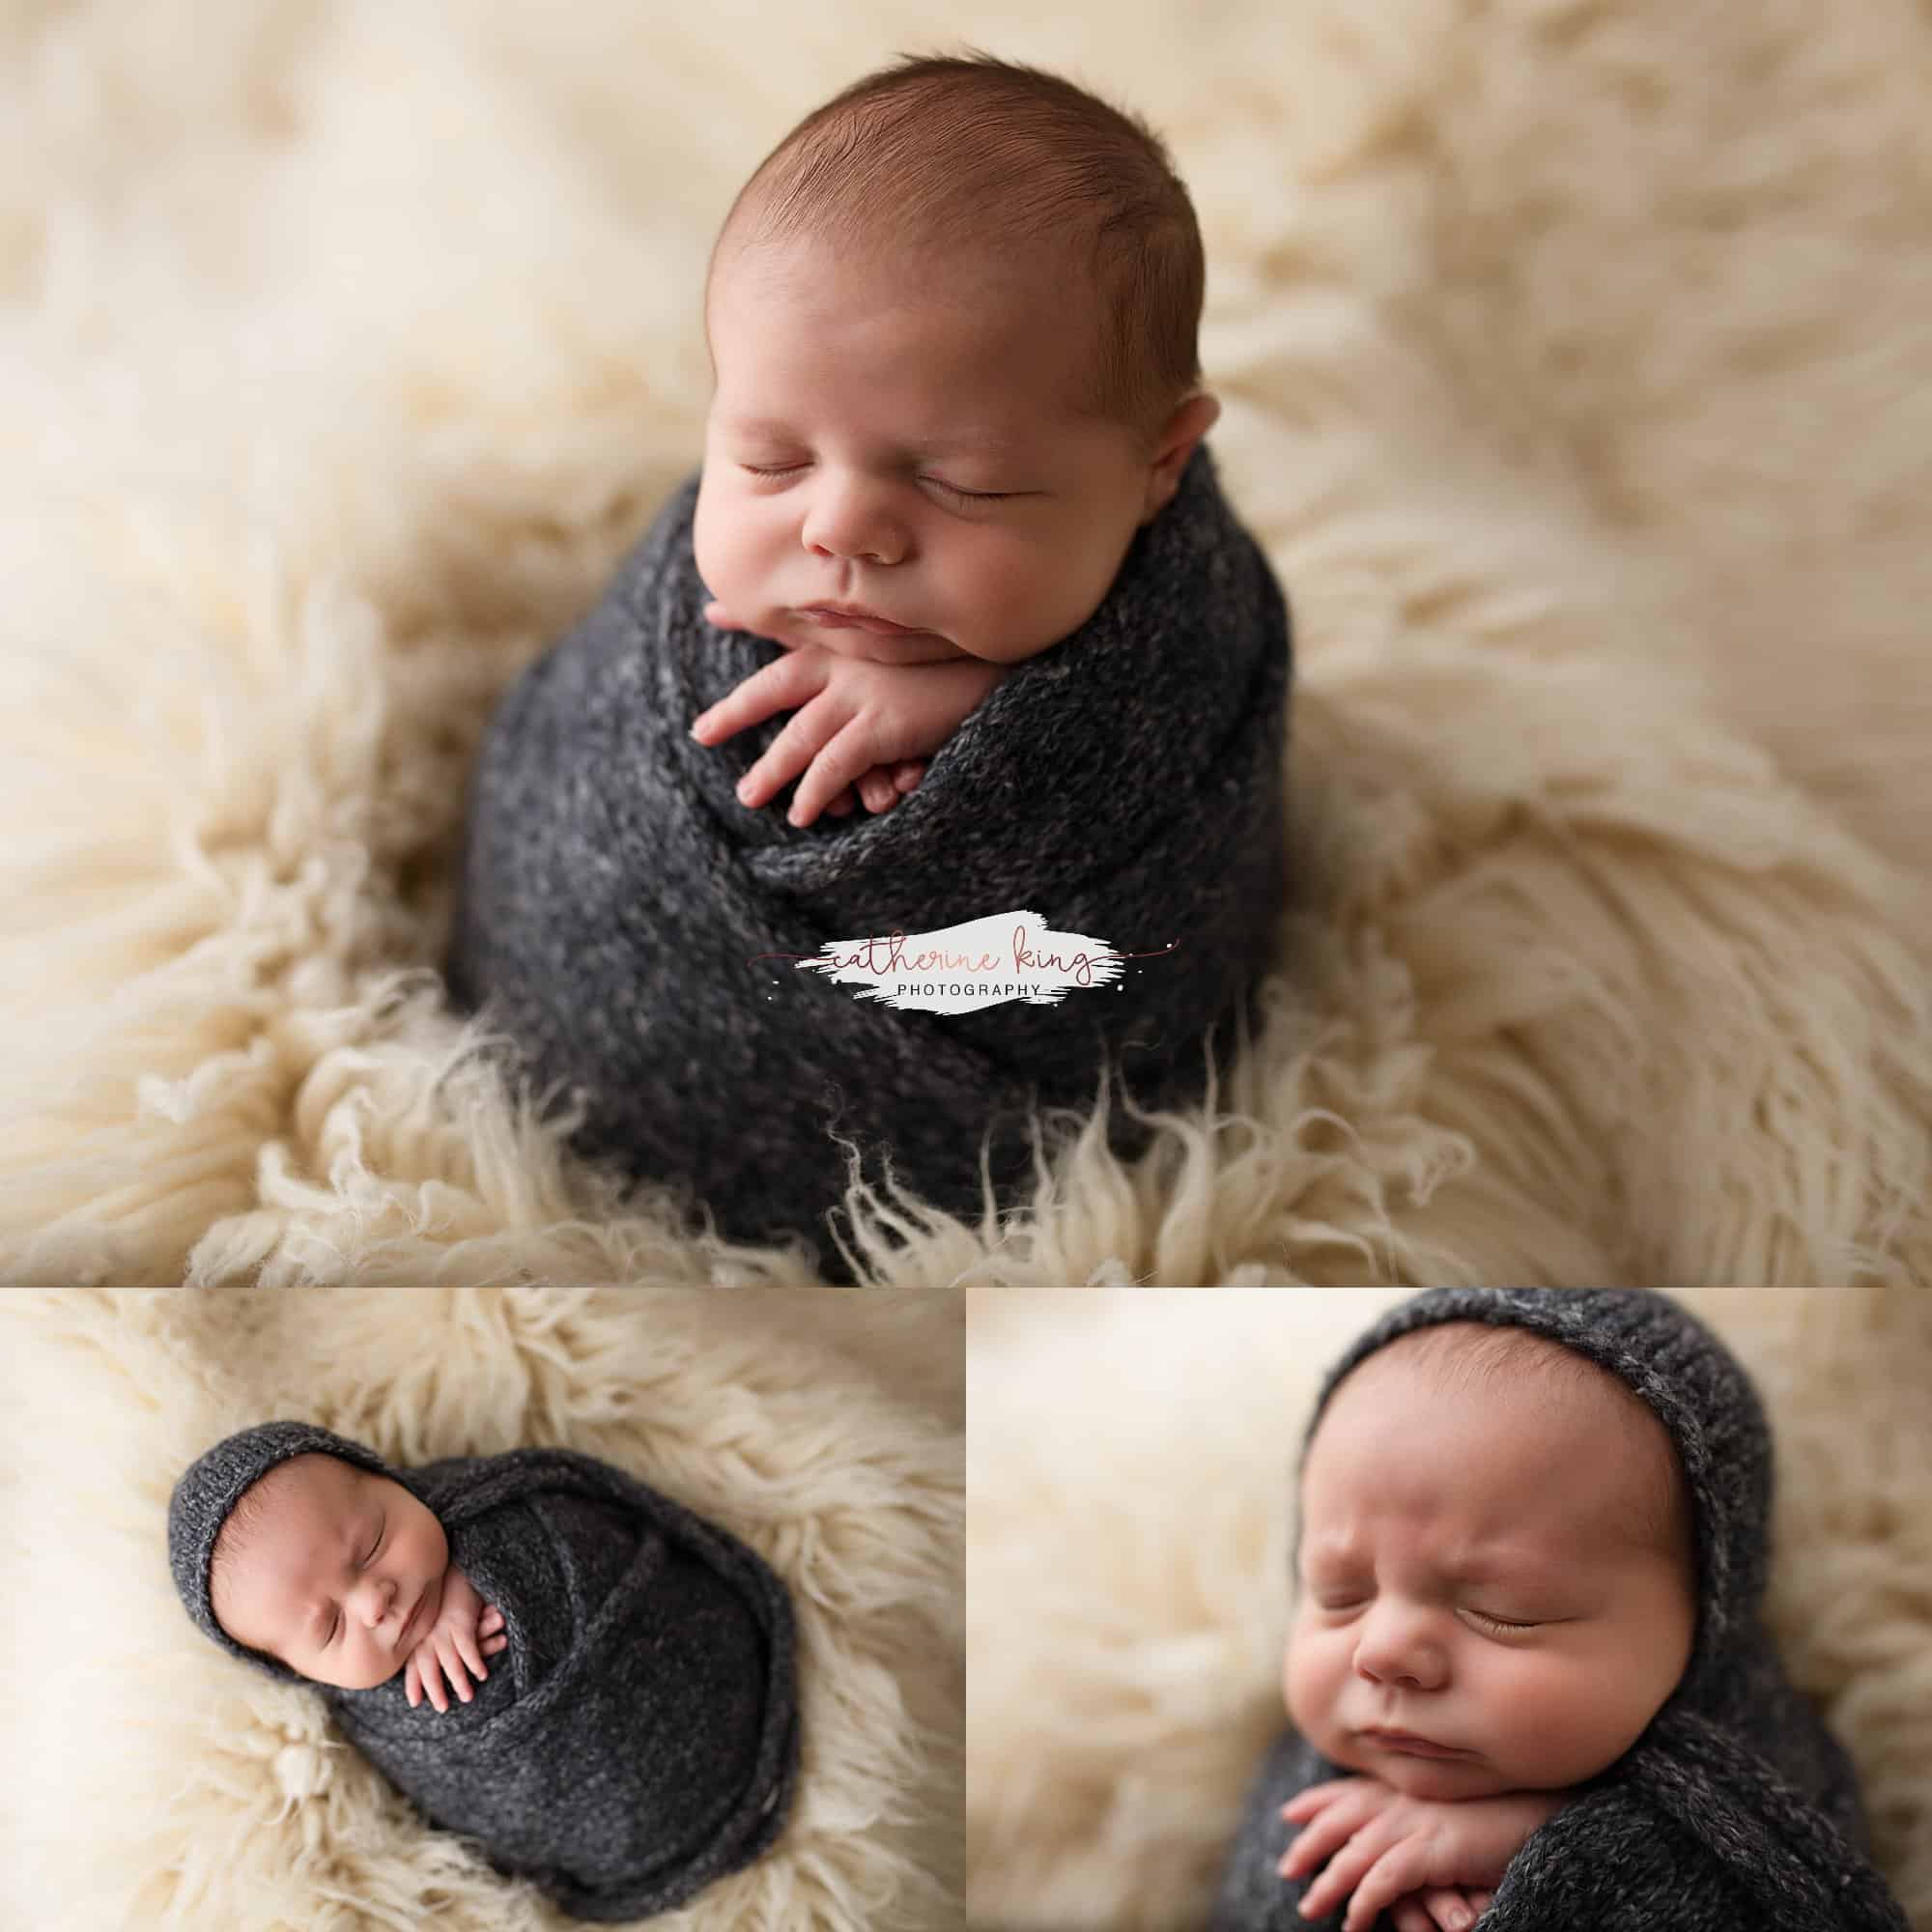 First newborn baby boy of 2021 | Branford CT Newborn Photographer